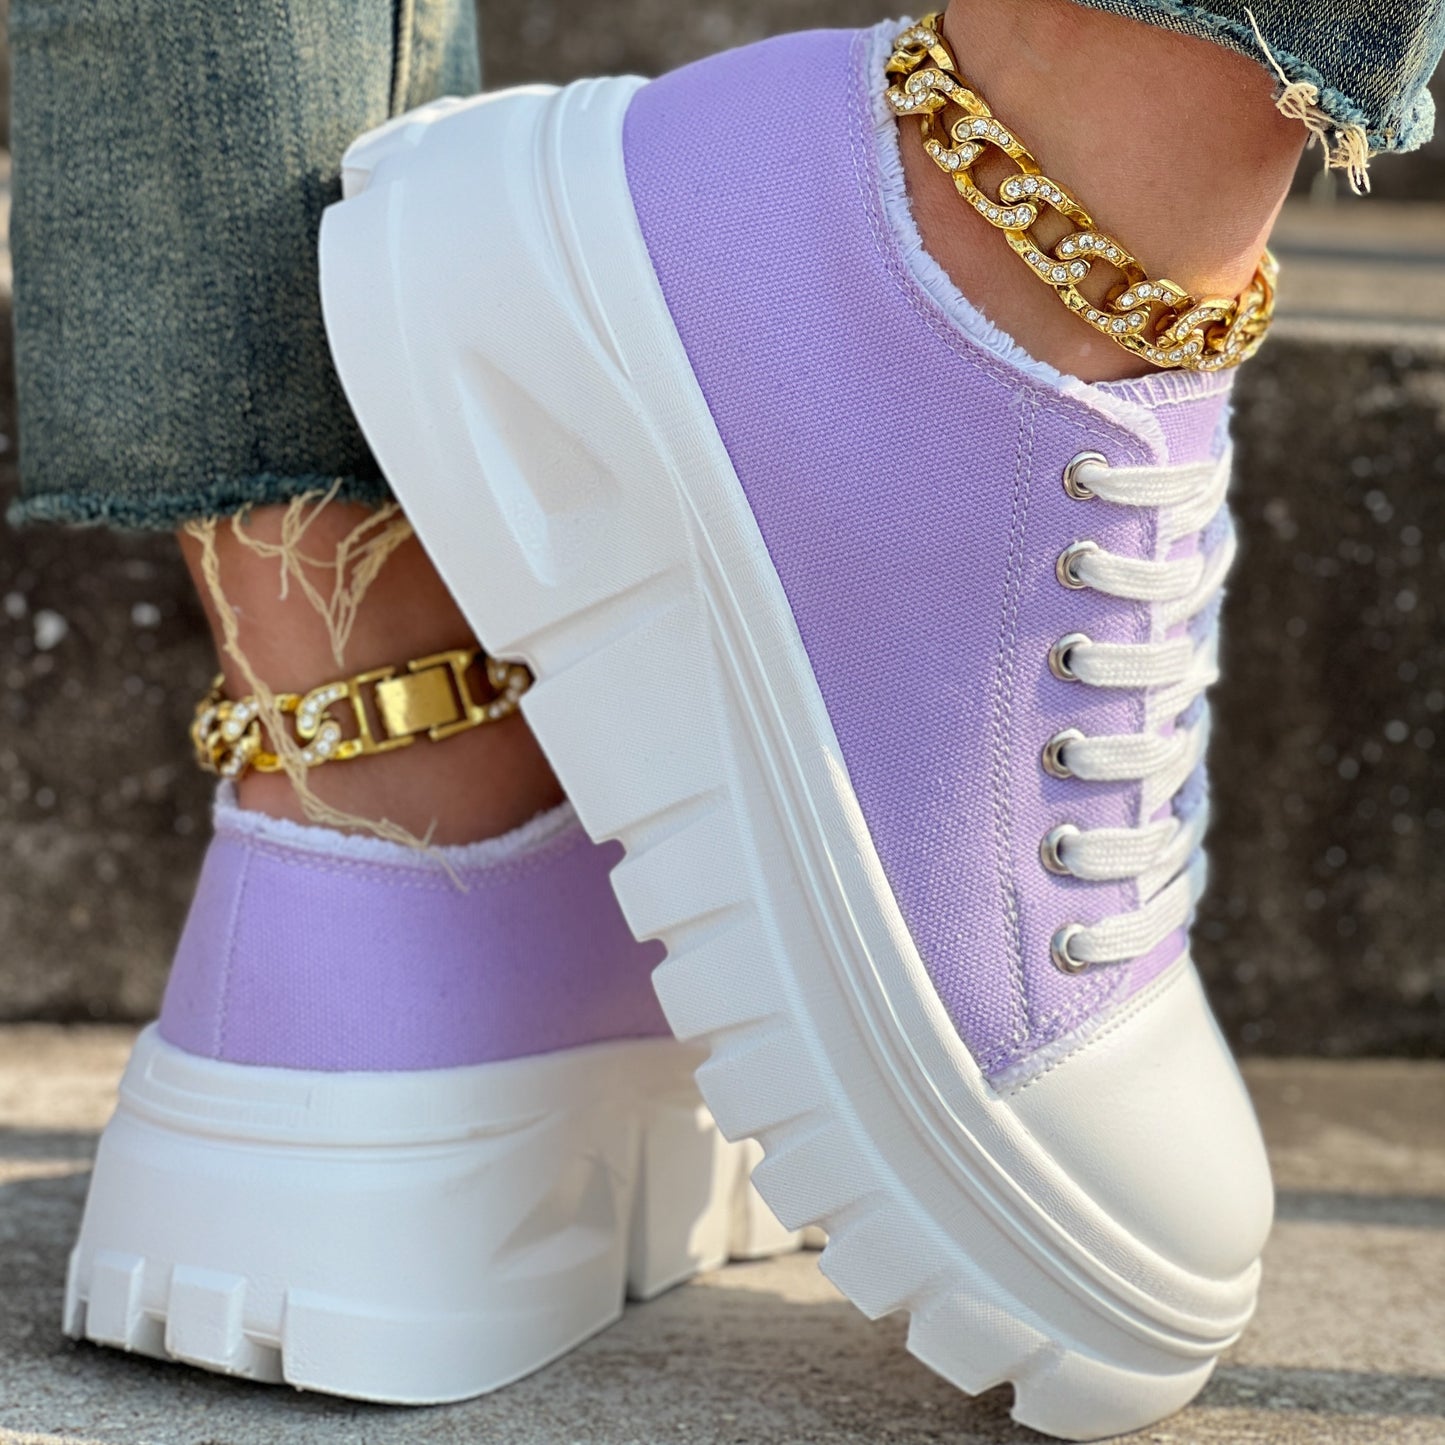 Women's Solid Color Casual Shoes, Lace Up Platform Soft Sole Shoes, Low-top Canvas Walking Shoes